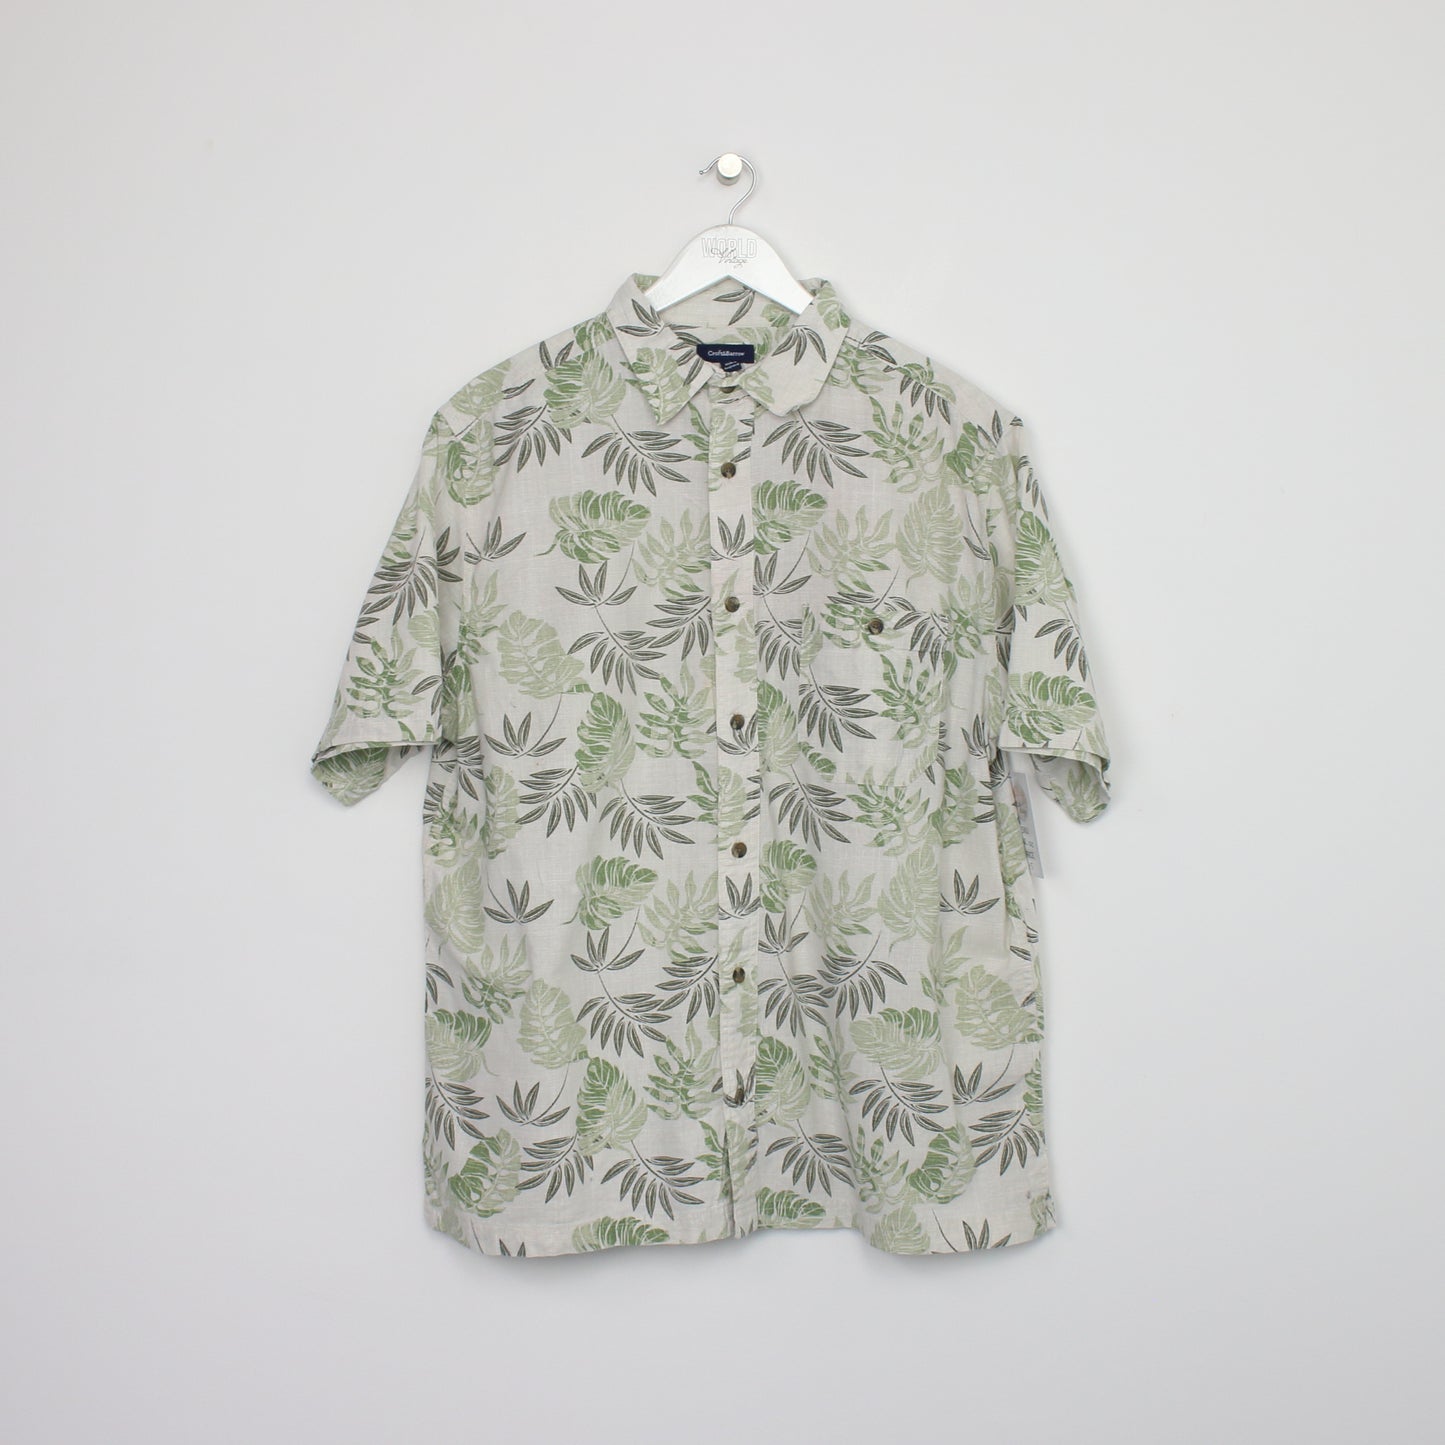 Vintage Croft&Barrow Hawaiian shirt in green. Best fits L